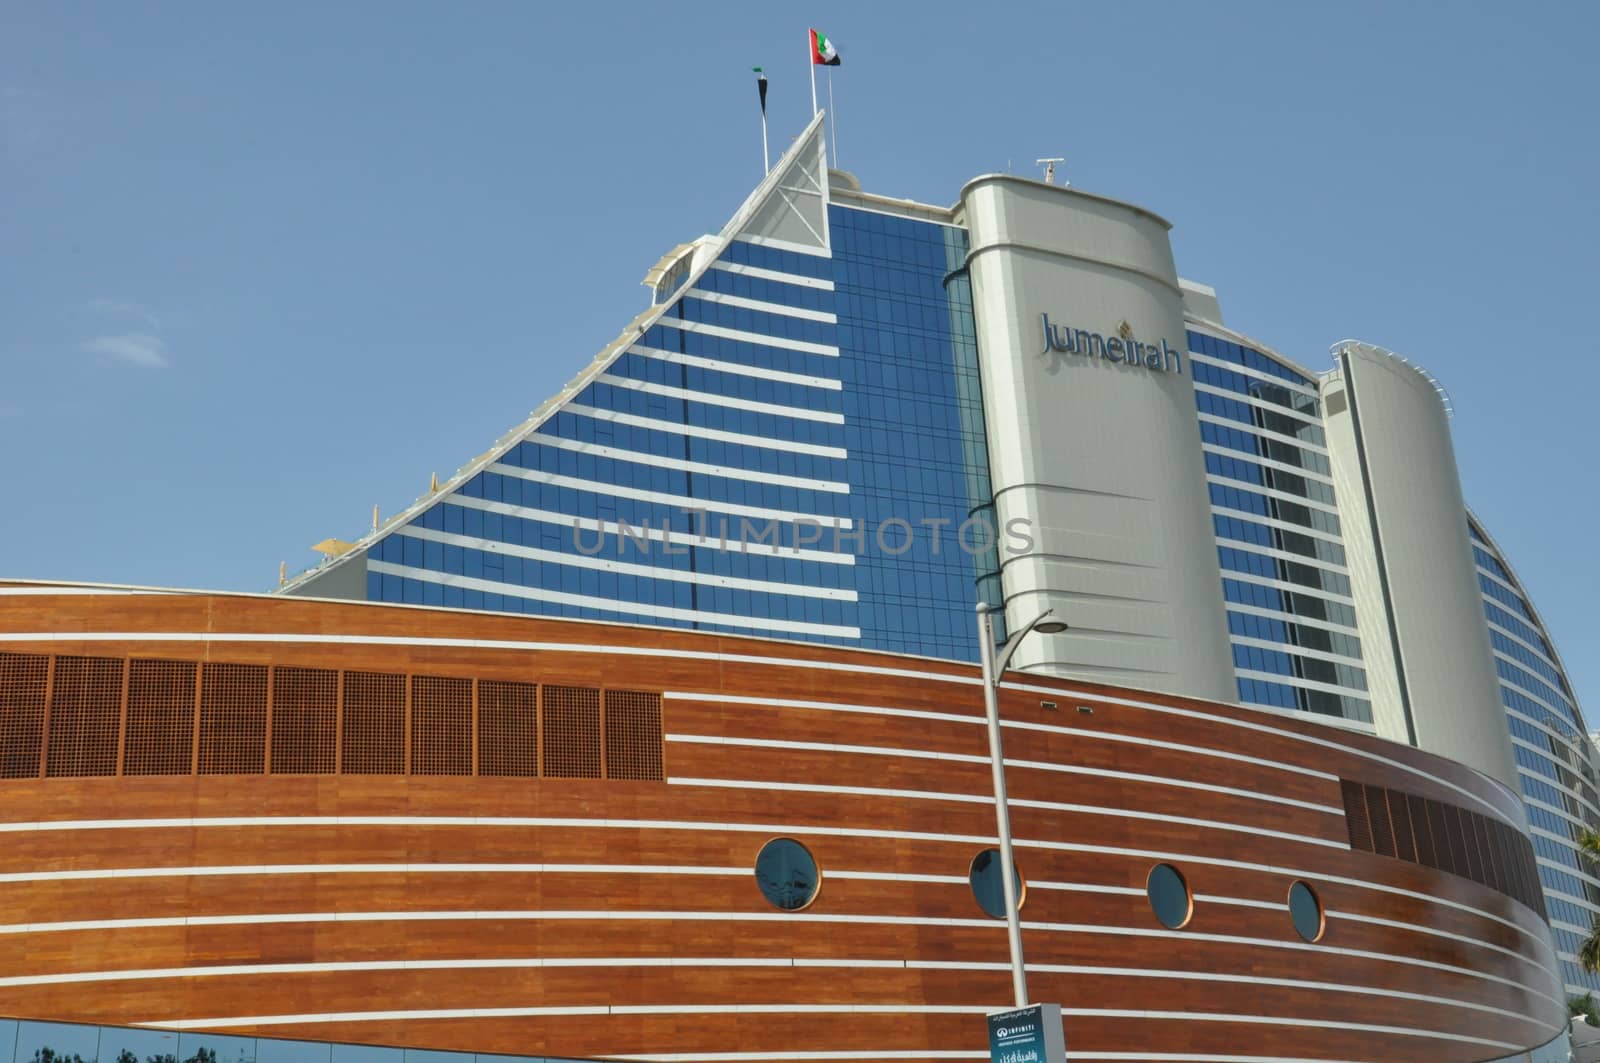 Jumeirah Beach Hotel in Dubai, UAE by sainaniritu